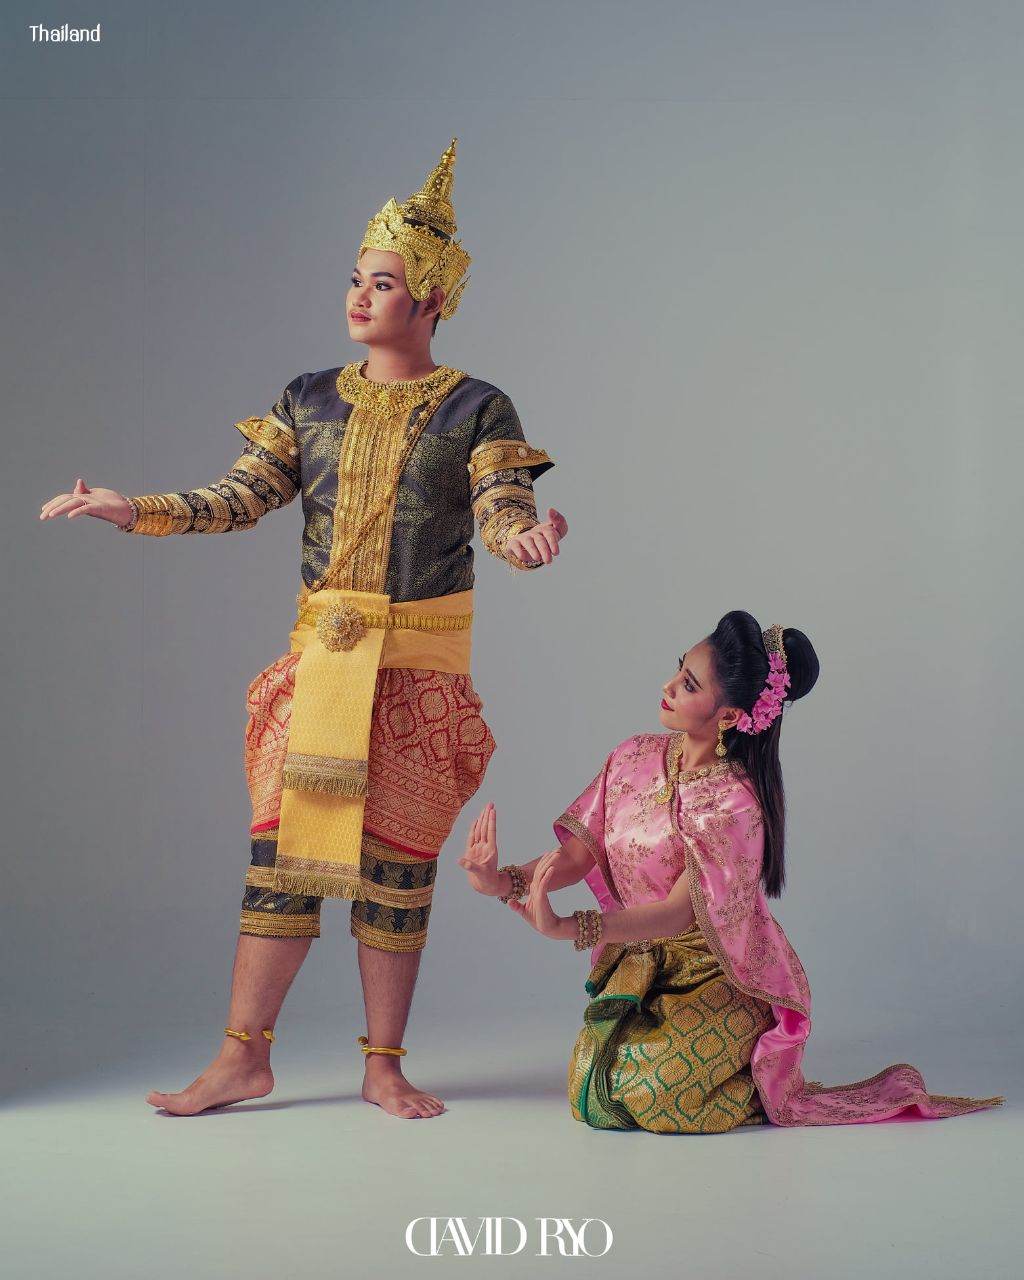 Thai dance | THAILAND 🇹🇭